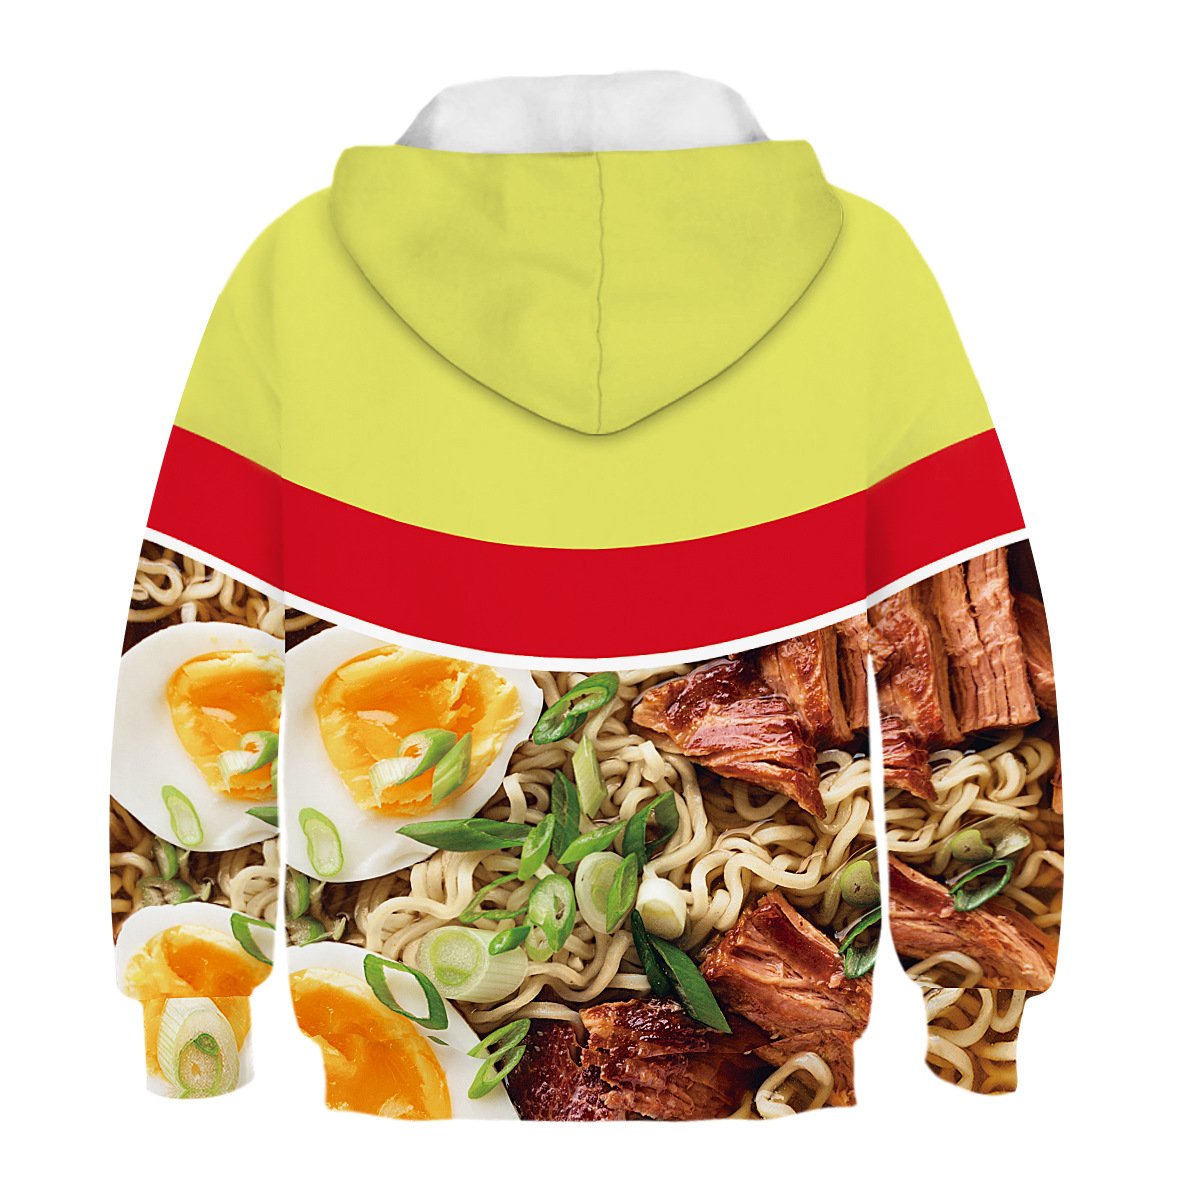 Kids Ramen Noodle Soup Beef Flaver Hoodie Unisex Sweatshirt - mihoodie